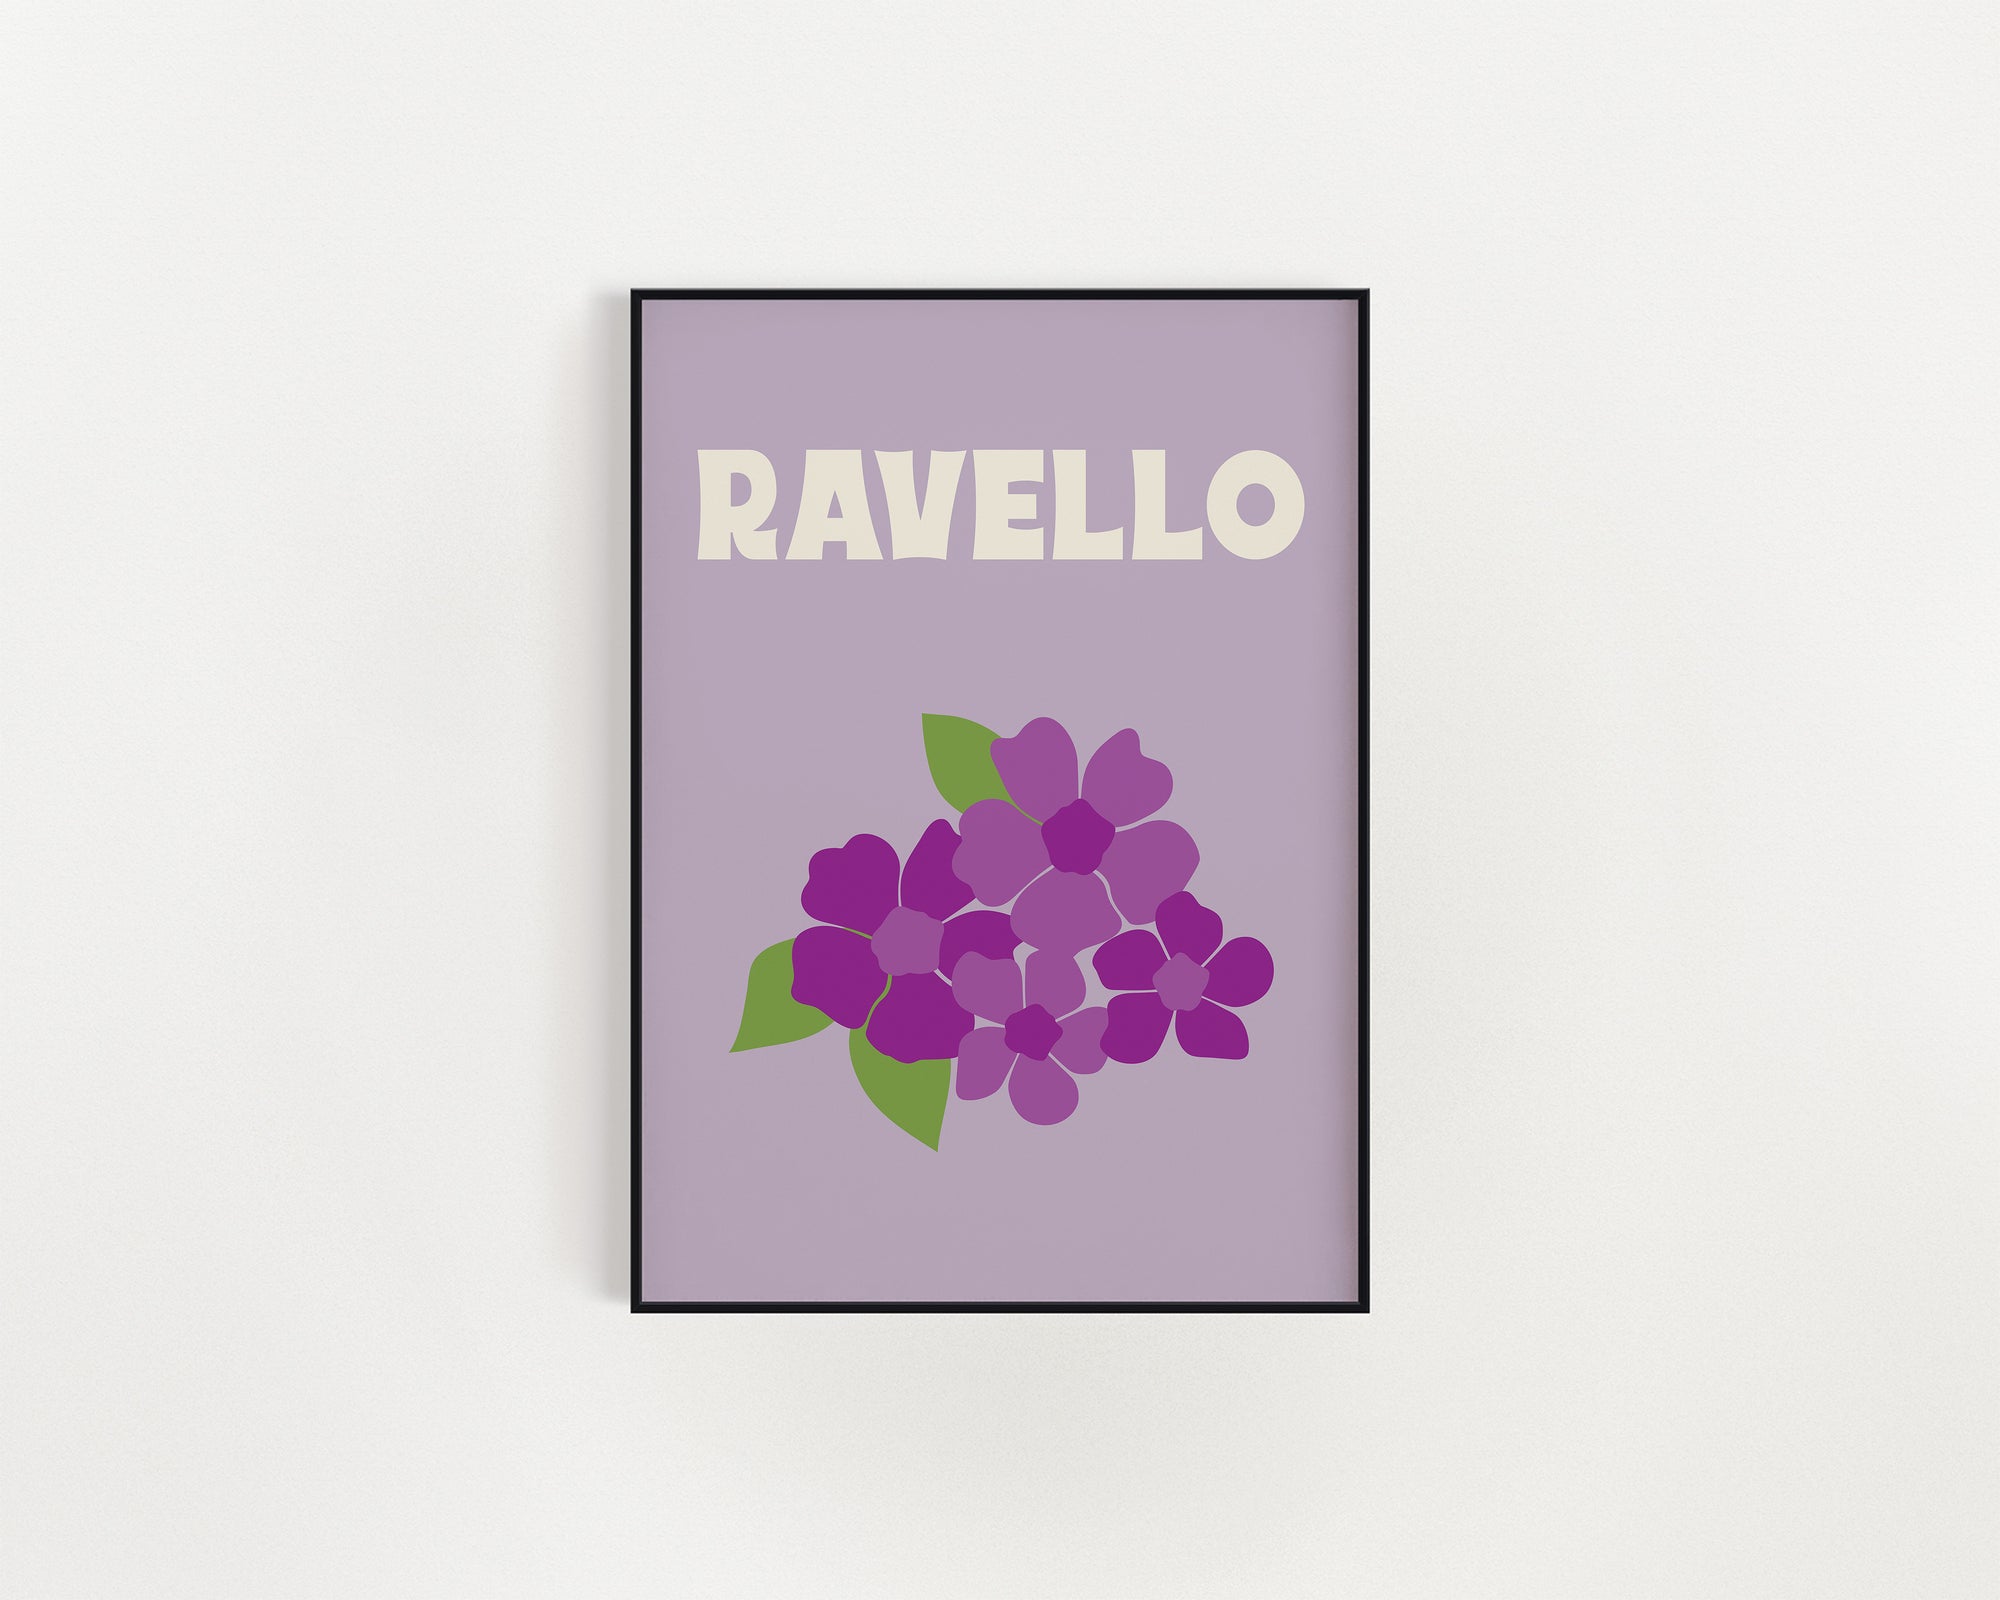 Ravello Print in Grape